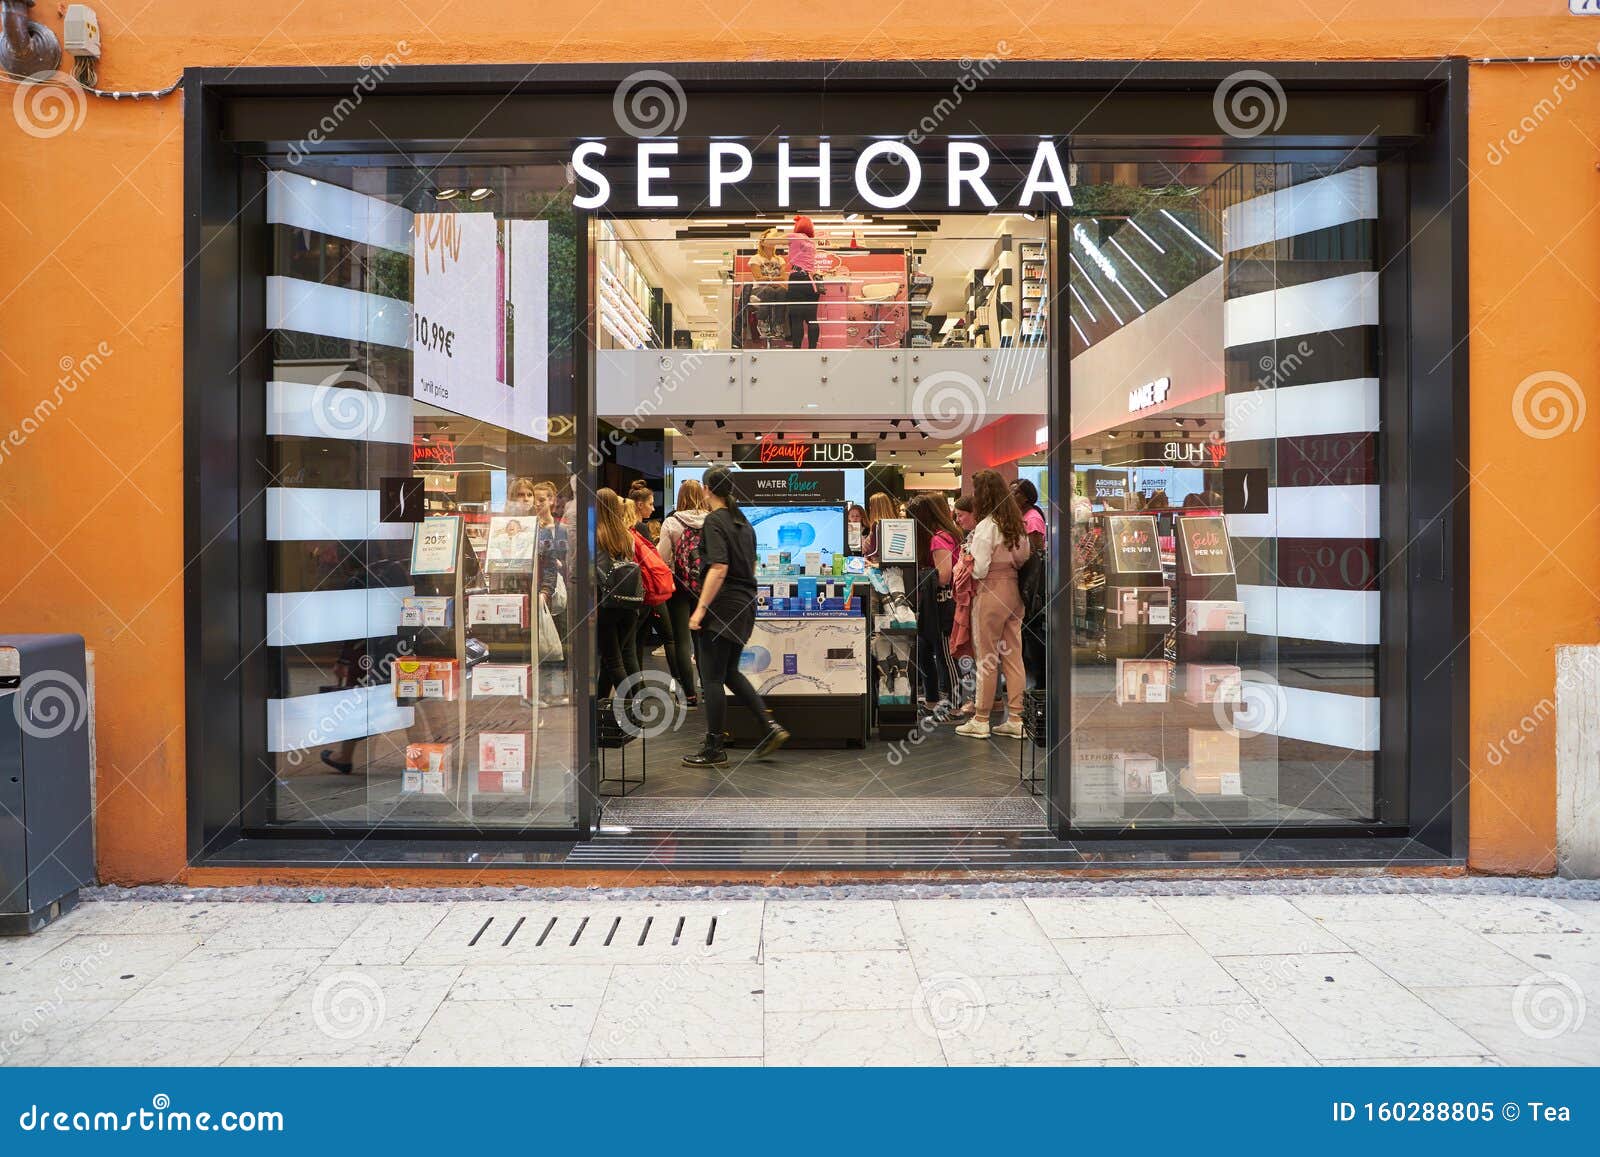 Sephora editorial stock photo. Image of merchandise - 160293908